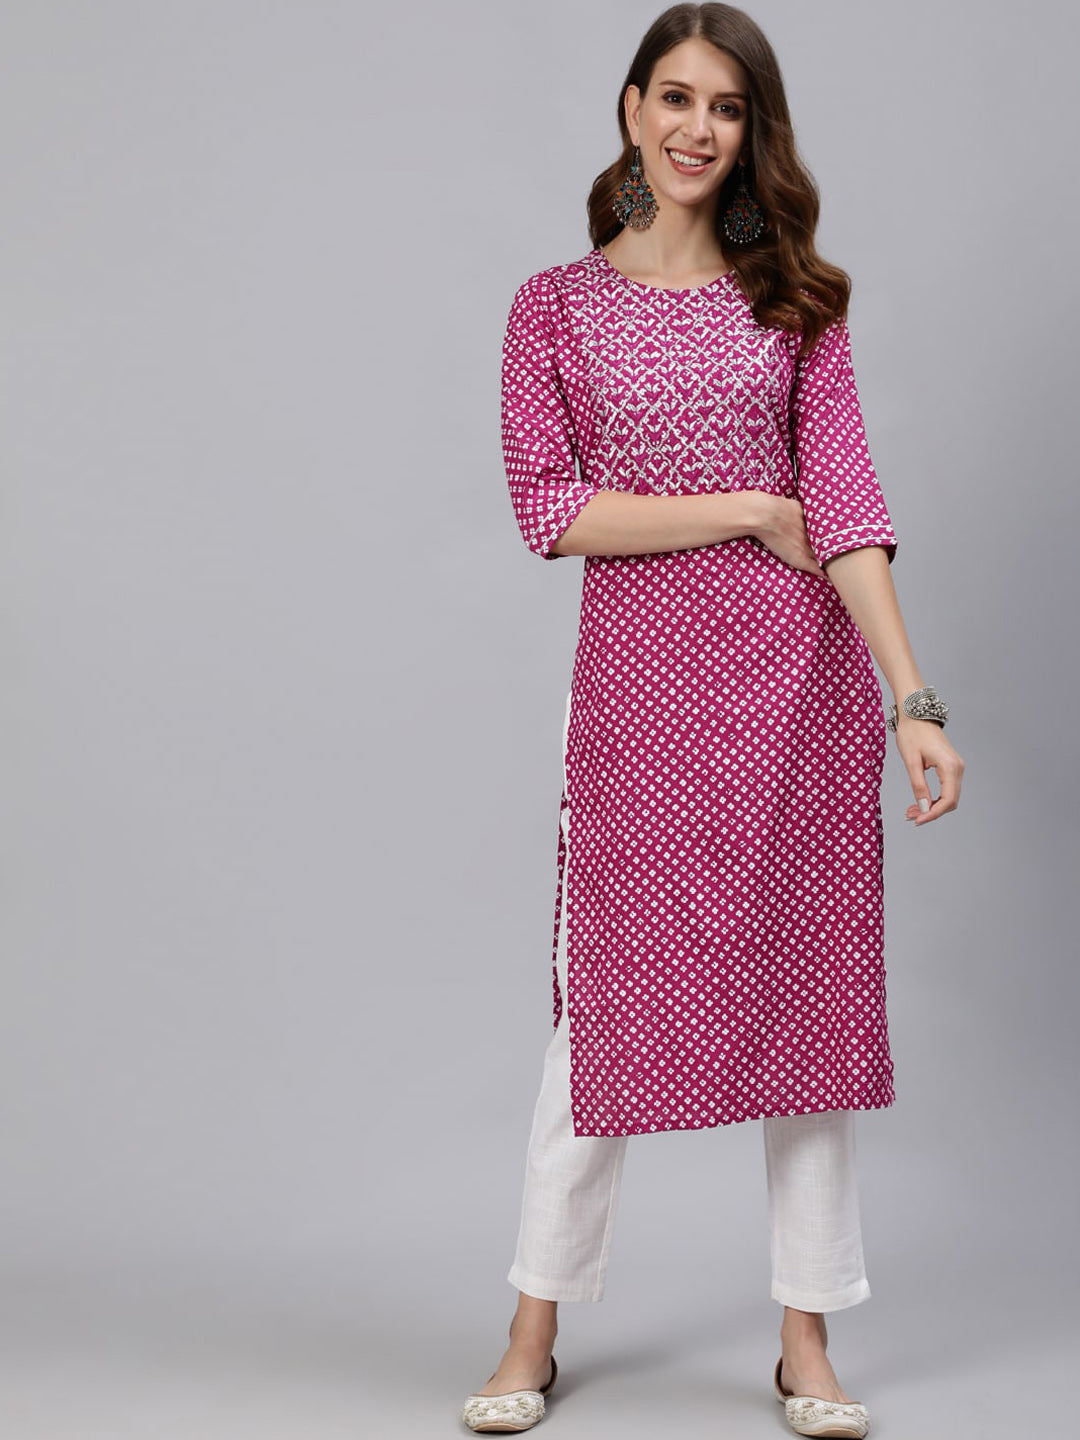 Free Oxidized Necklace Indian Designer Reyon Kurti Jaipuri Kurti Gown, Long  Kurti Suits, Green Color Kurti Salwar Suits, Long Suits, - Etsy Norway